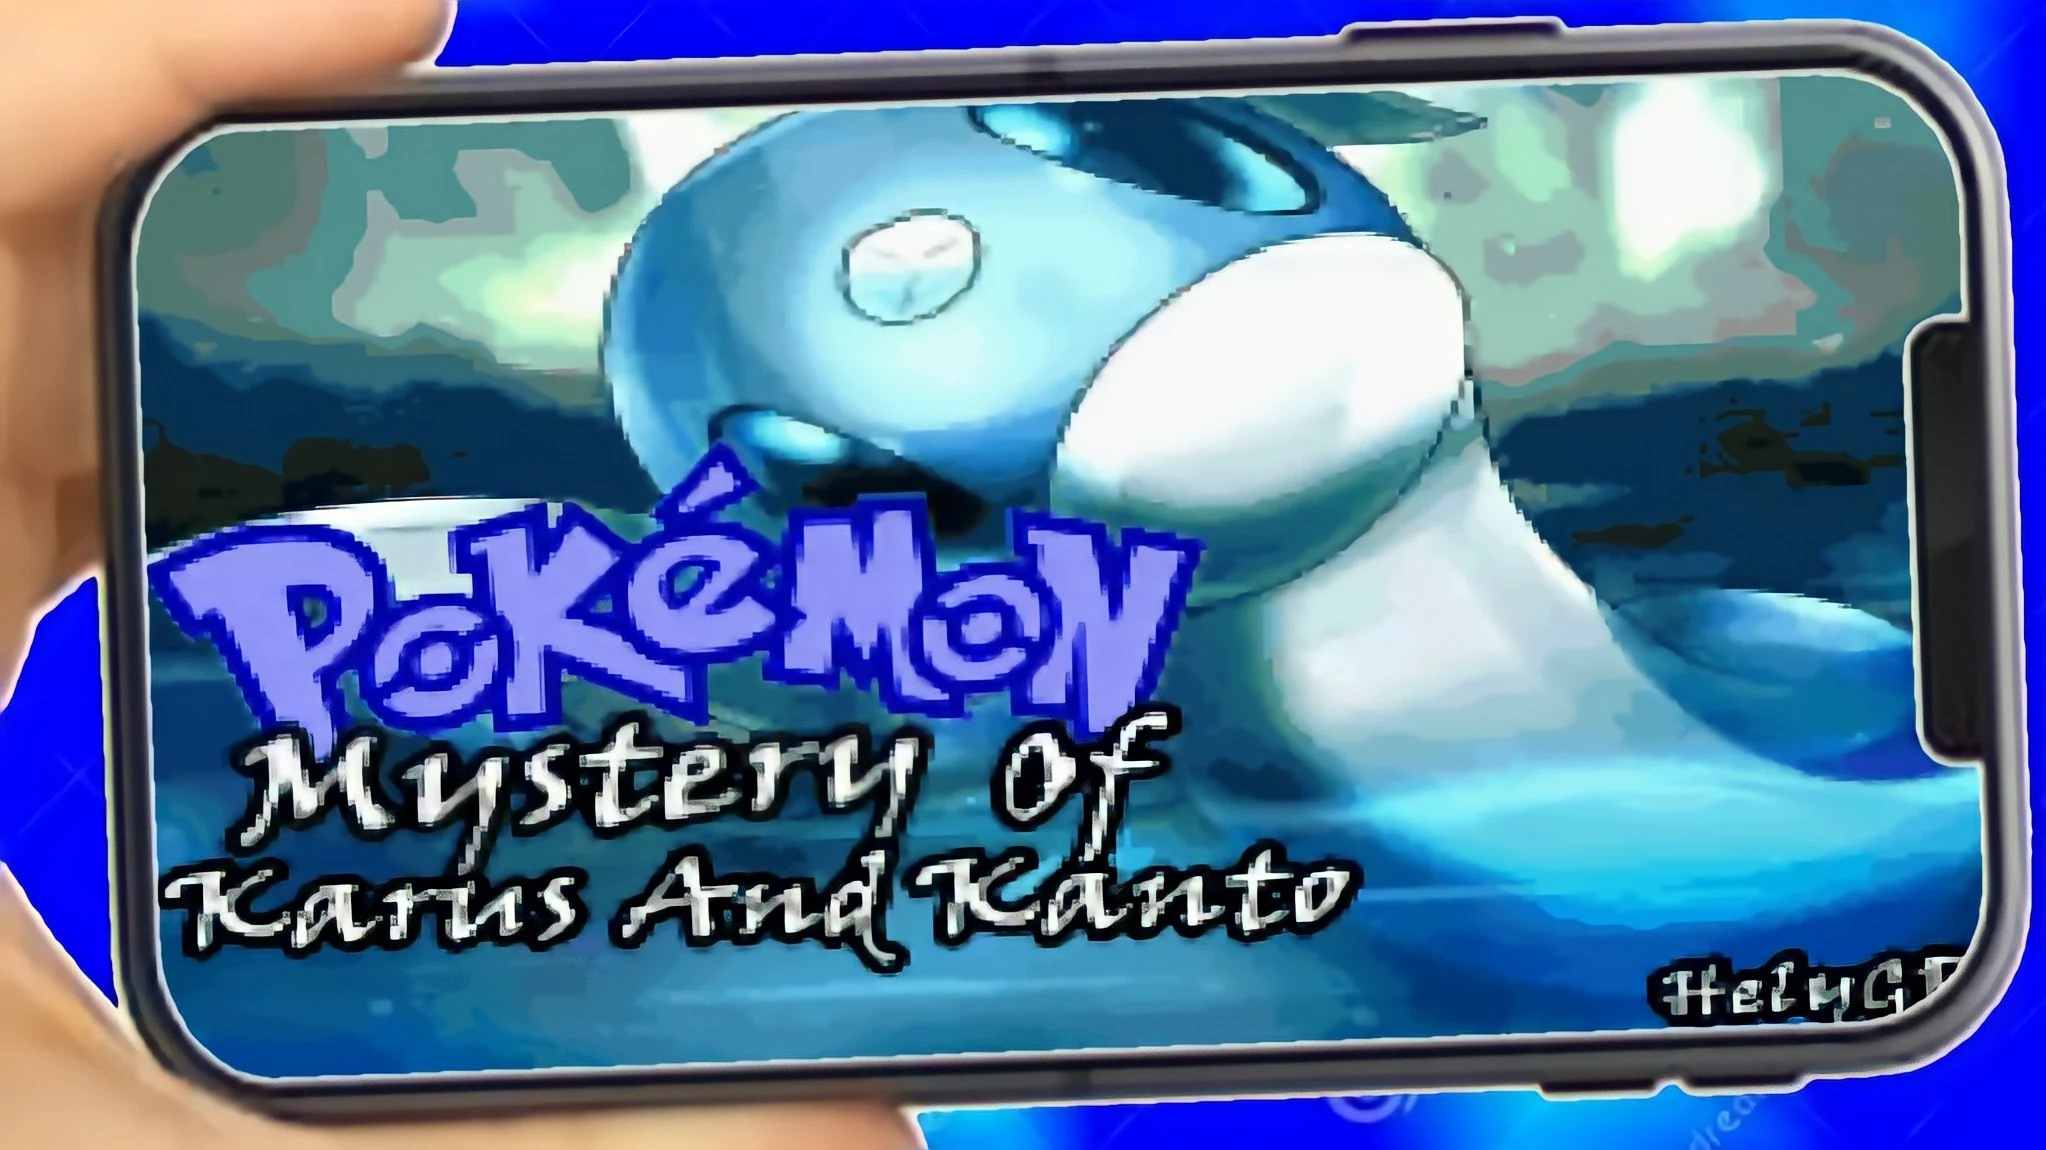 História Pokémon Dark Worship - O começo de uma lenda - História